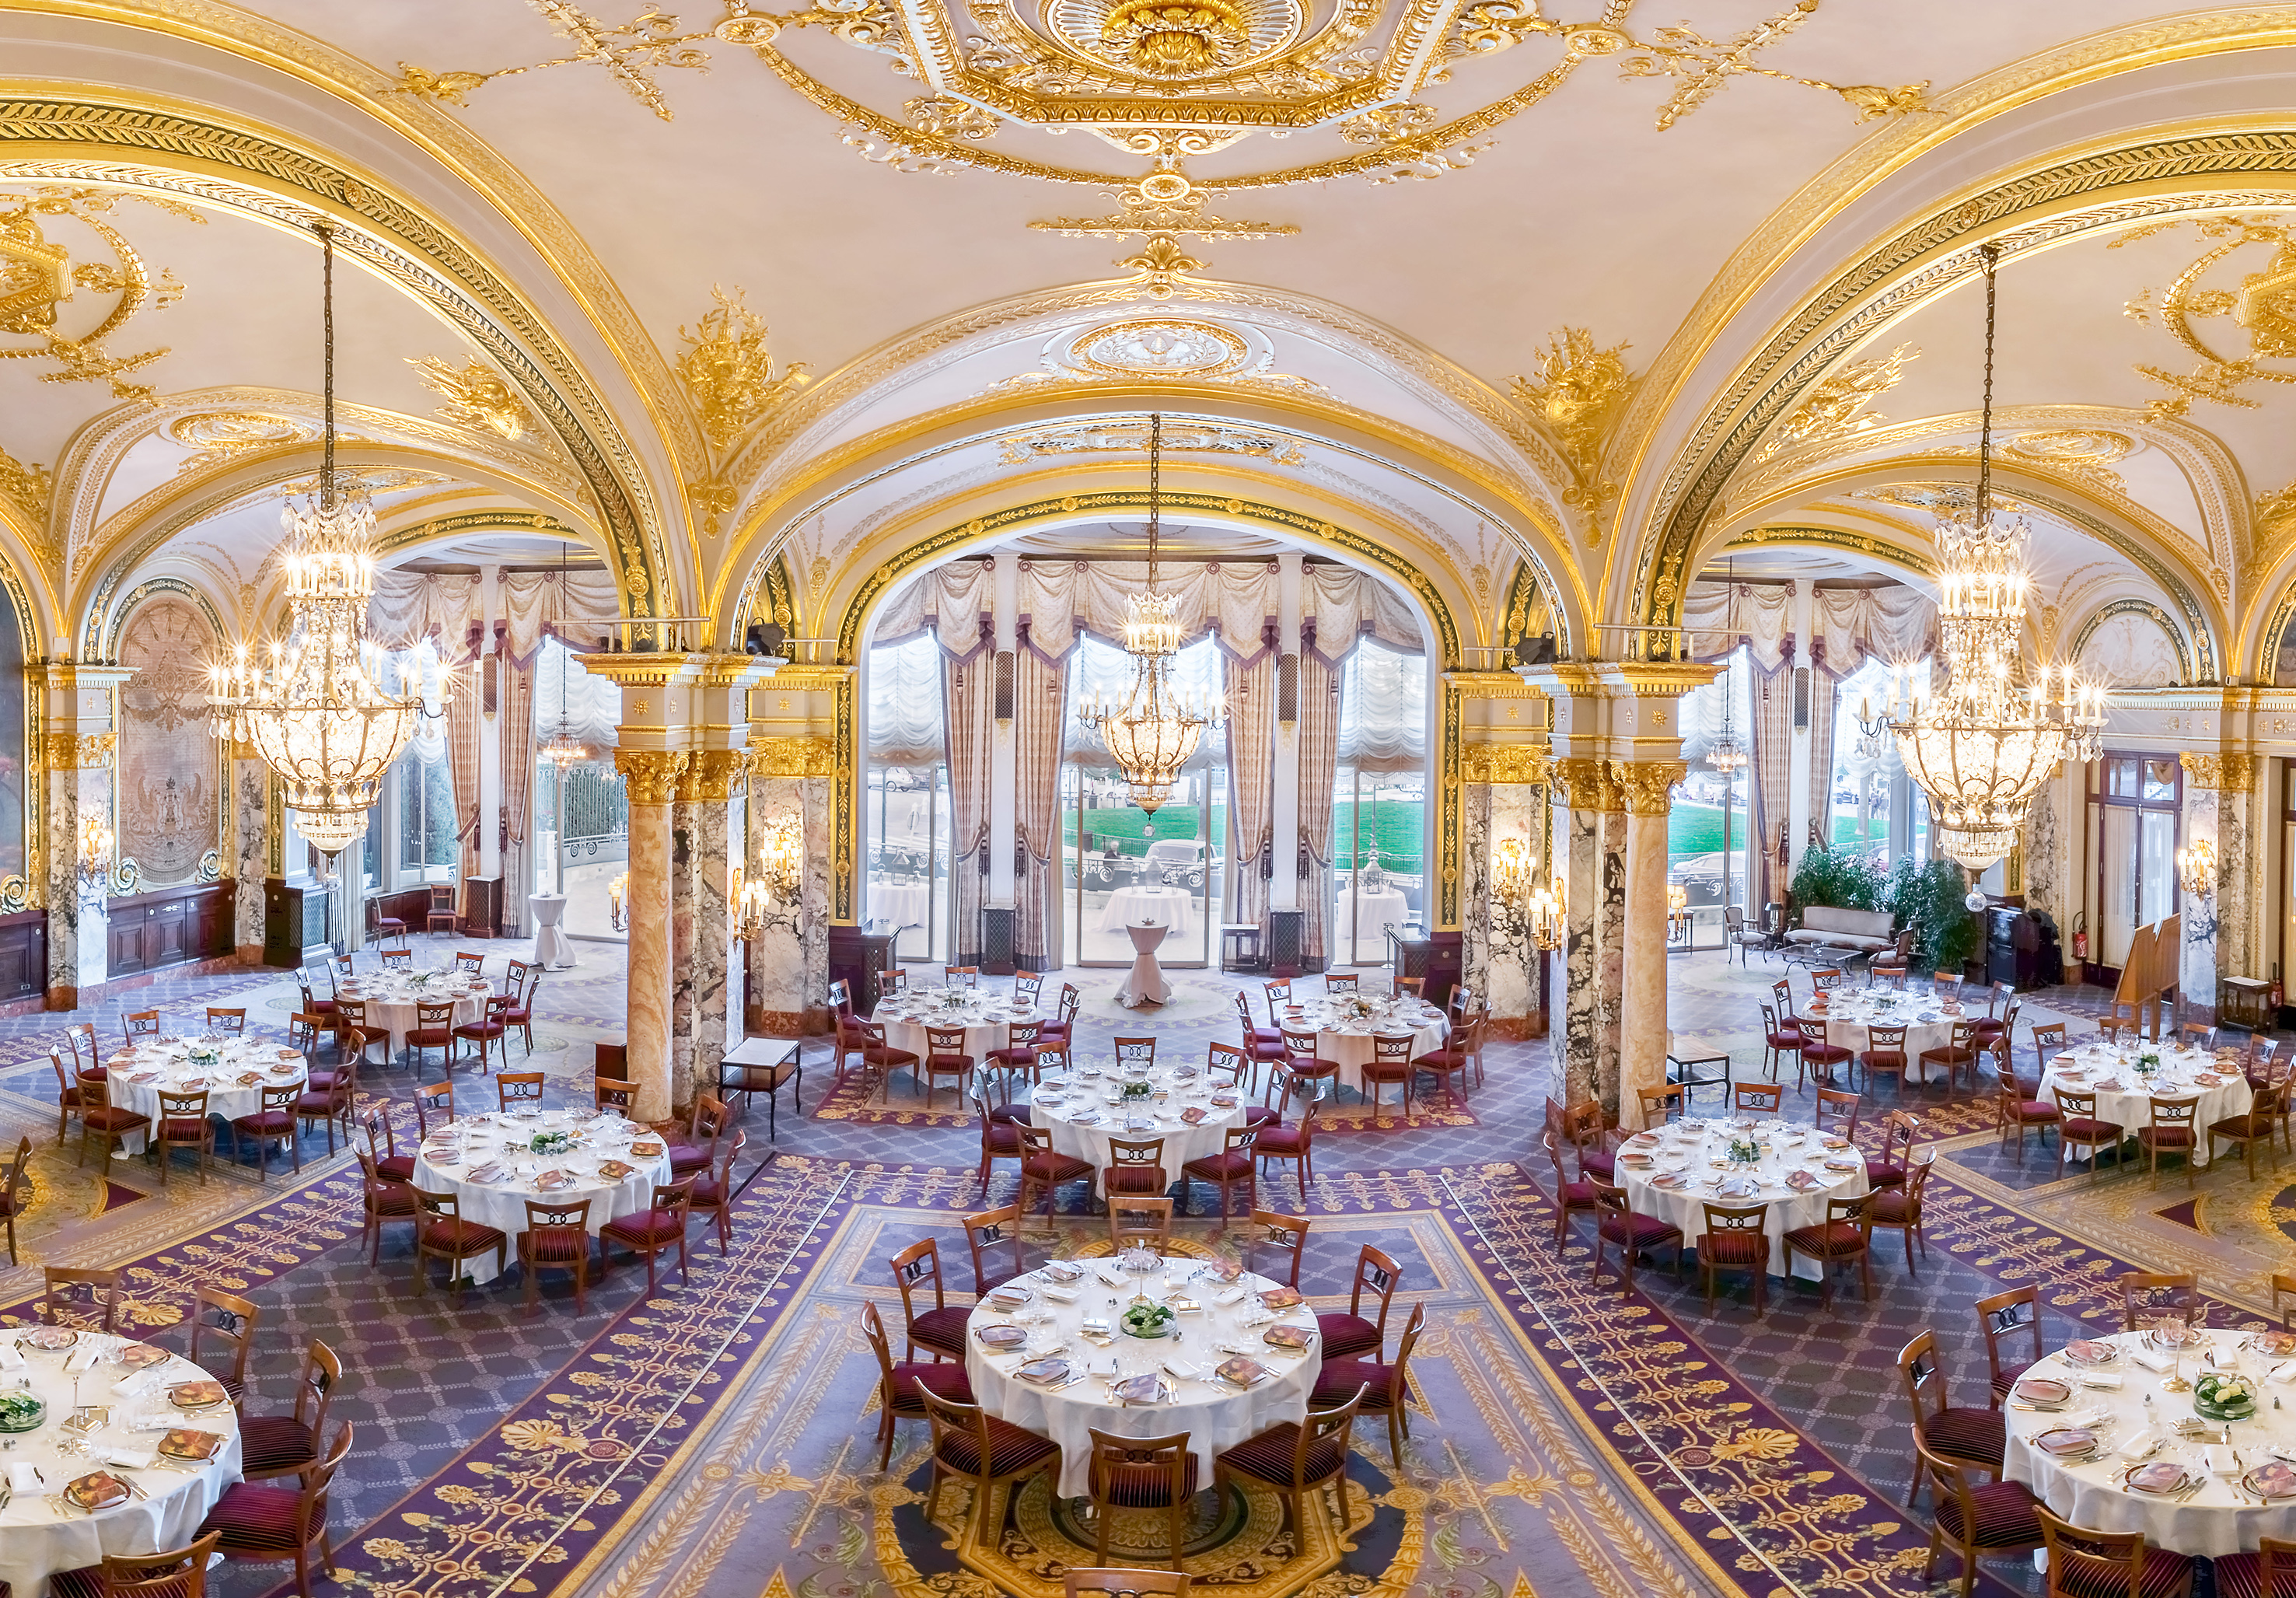 Hôtel de Paris Monte-Carlo, Monte-Carlo | Venue | Eventopedia | US